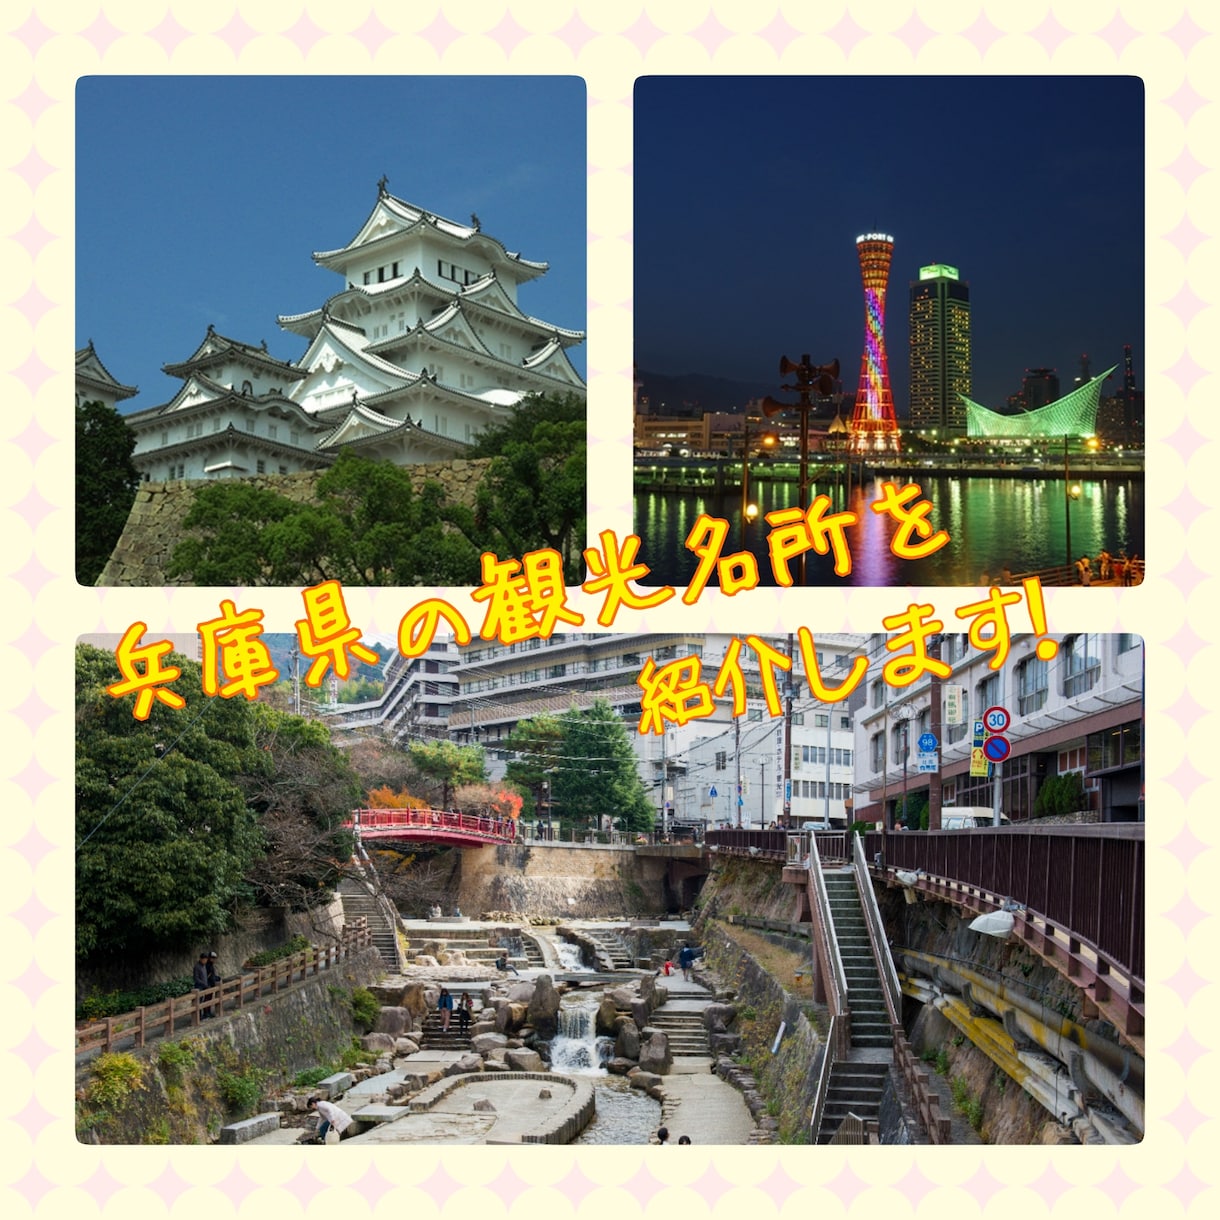 兵庫県の観光スポットをご案内します これから兵庫を楽しむ貴方へ！旅の手助けさせて頂きます！